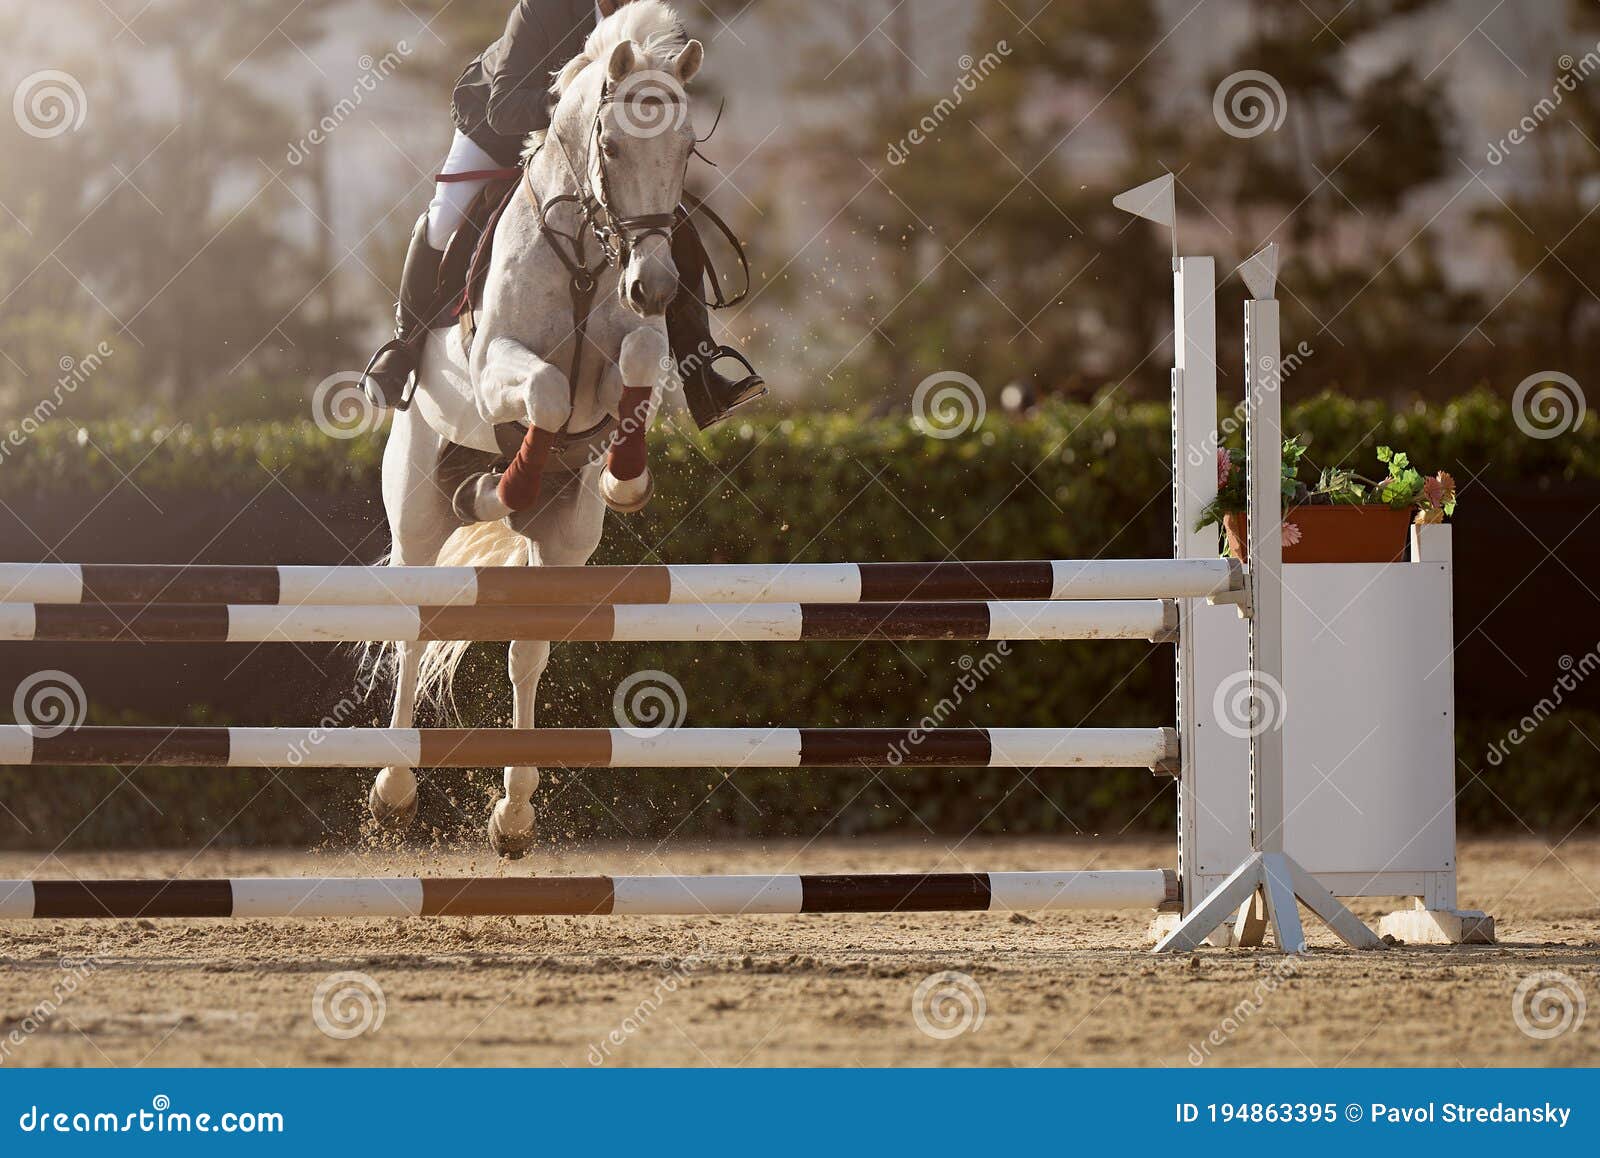 Jockey Com Seu Cavalo Pulando Sobre Um Obstáculo Imagem de Stock